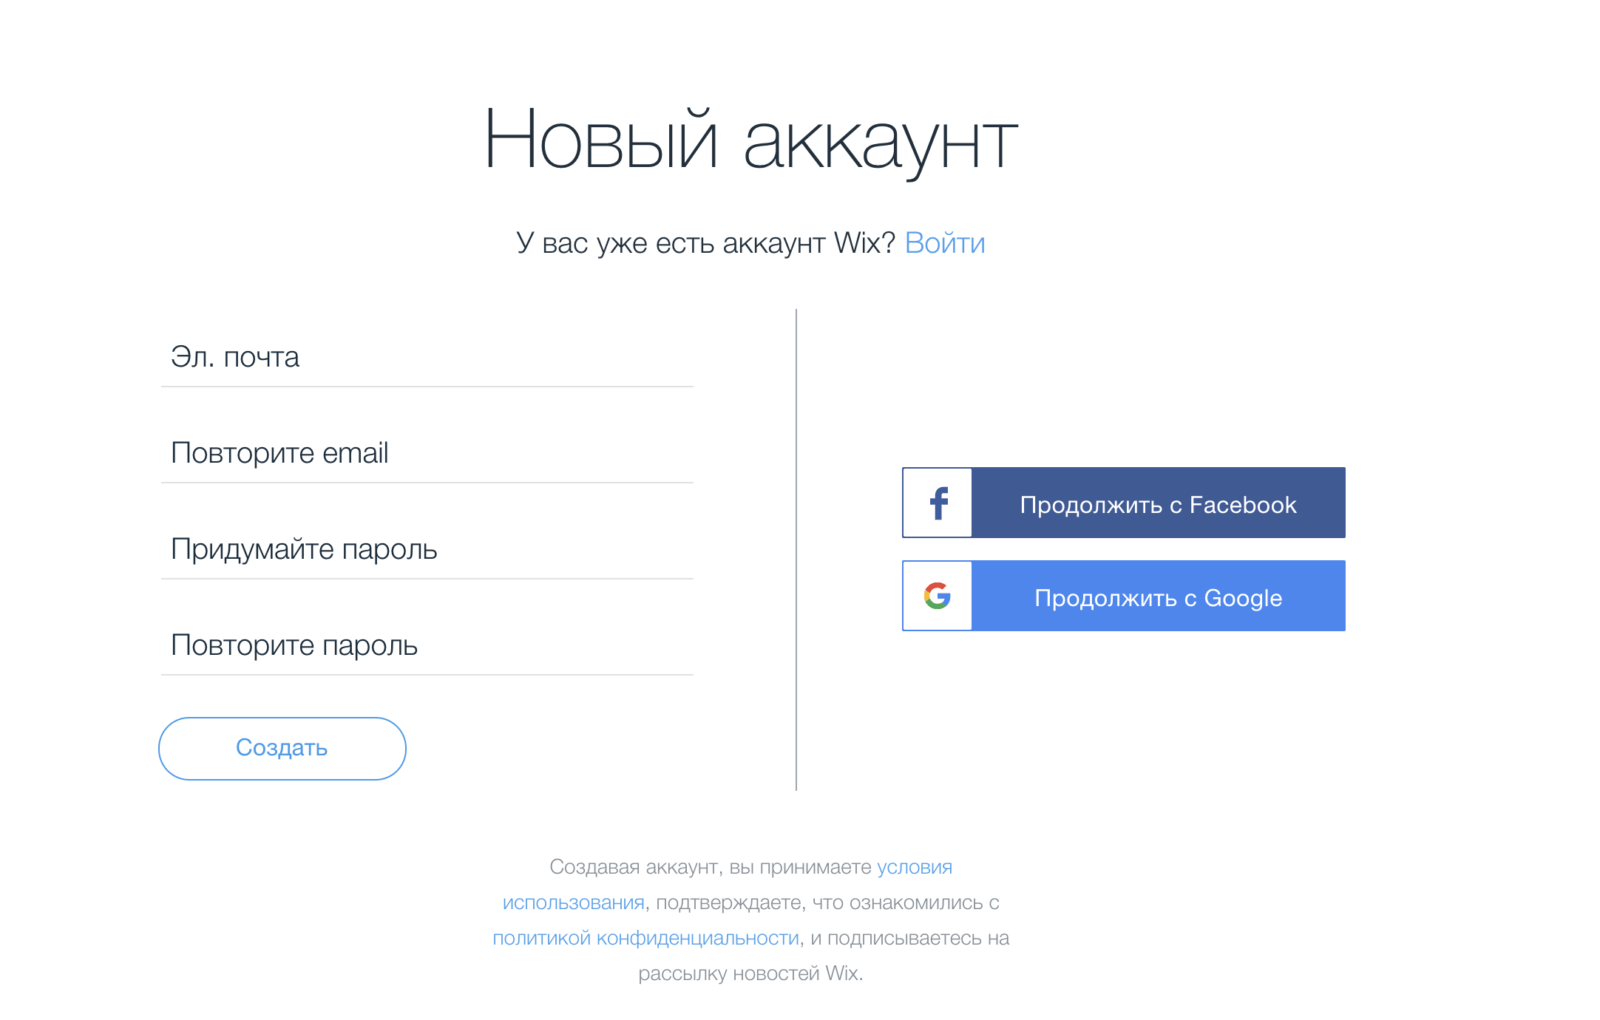 Инструкции для создания сайтов создание сайта в украине цена